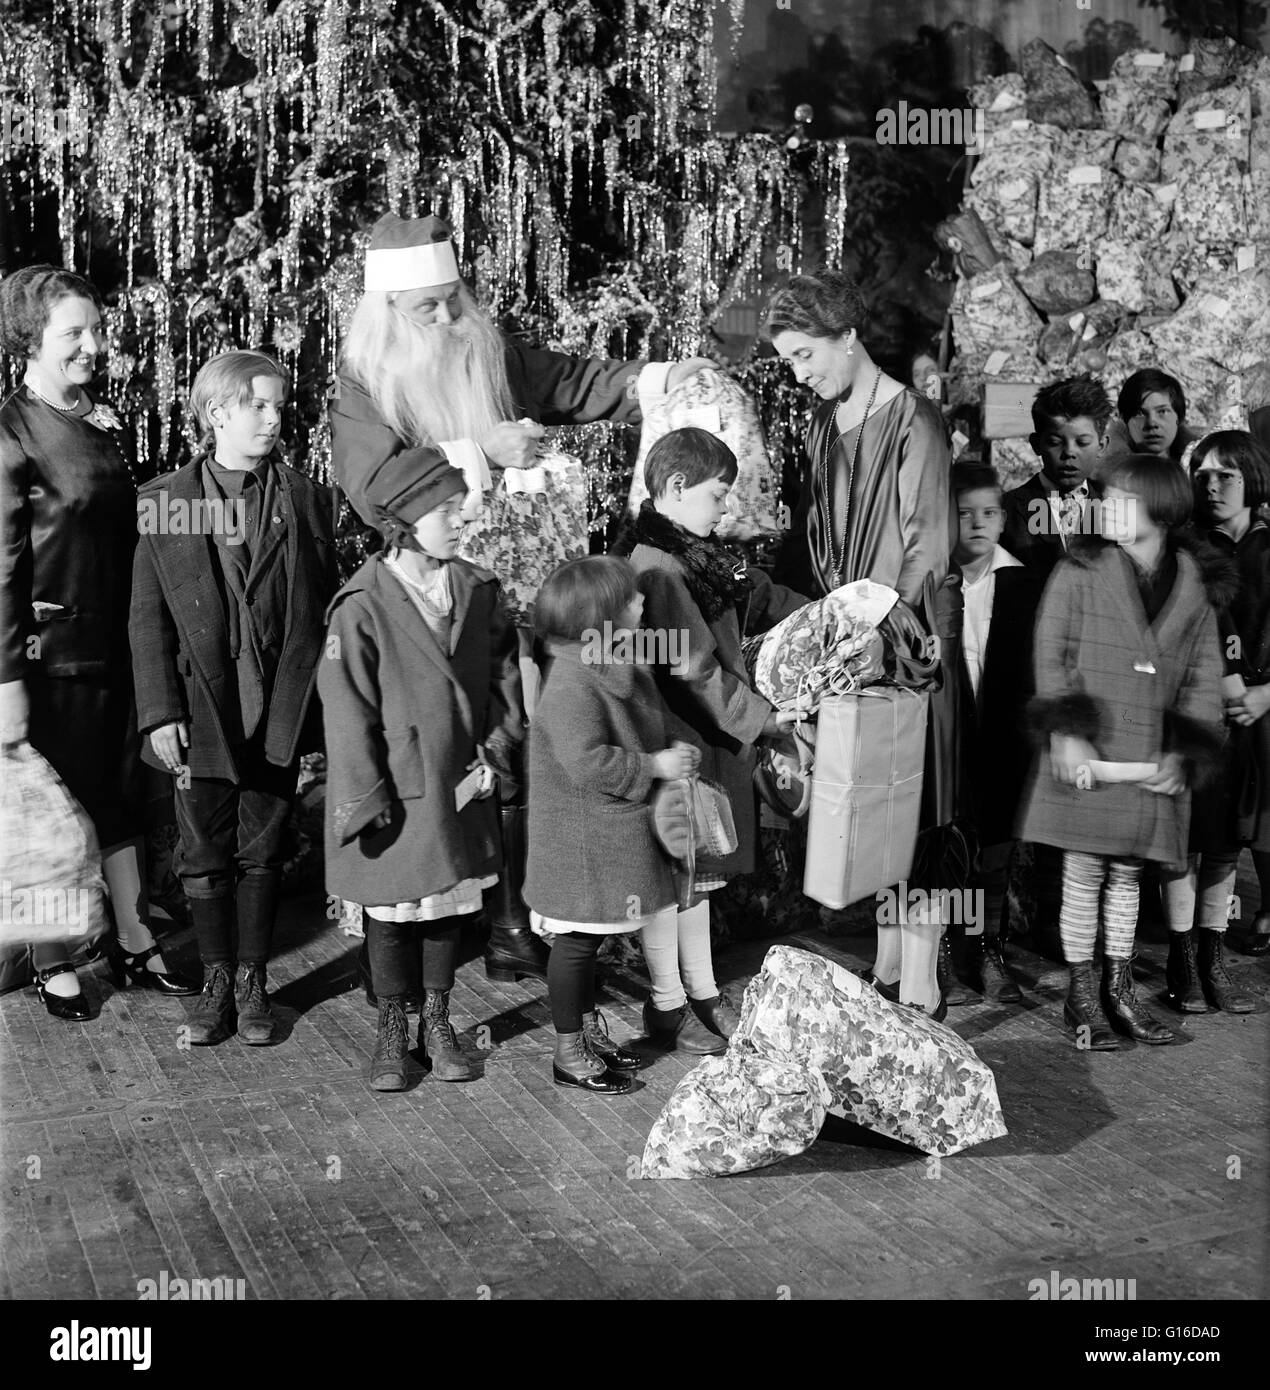 Titel: "Grace Coolidge, Santa Claus und Kinder neben Weihnachtsbaum." Grace Anna Goodhue Coolidge (3. Januar 1879 - 8. Juli 1957) war die Ehefrau von Calvin Coolidge und First Lady der Vereinigten Staaten von 1923 bis 1929. Sie ist Absolventin der Universität Stockfoto